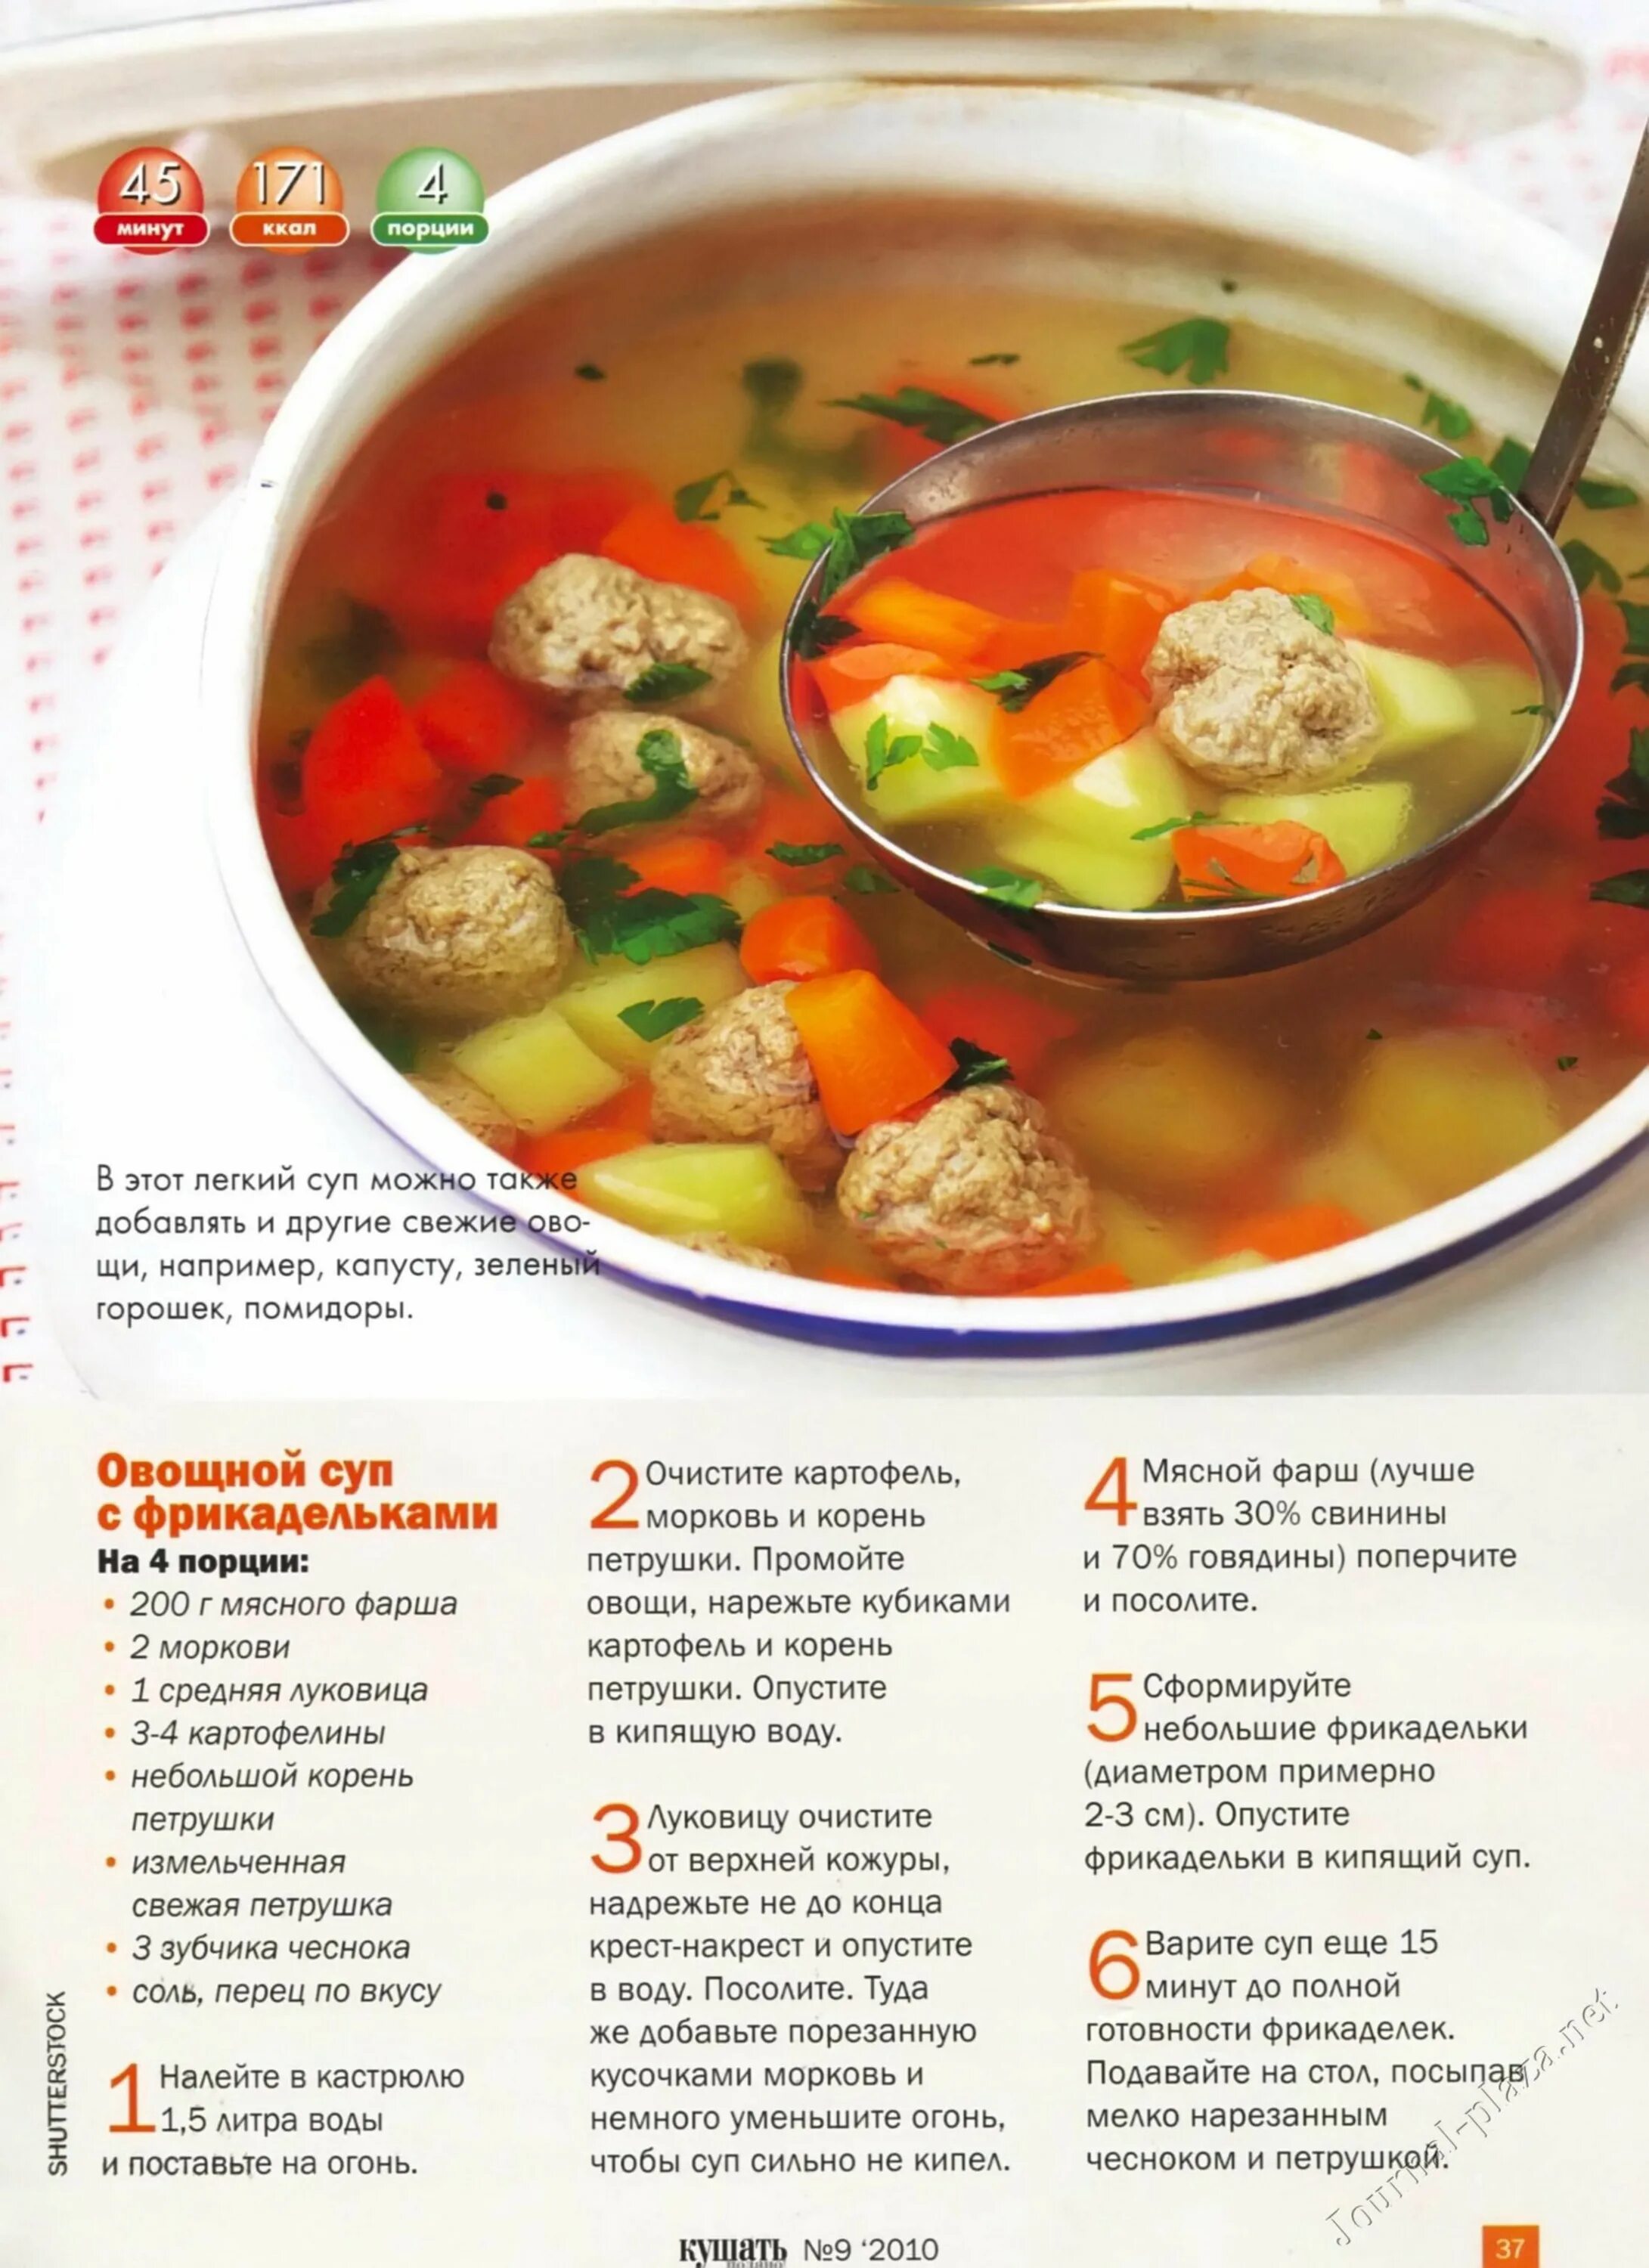 Суп гиппократа рецепт приготовления в домашних